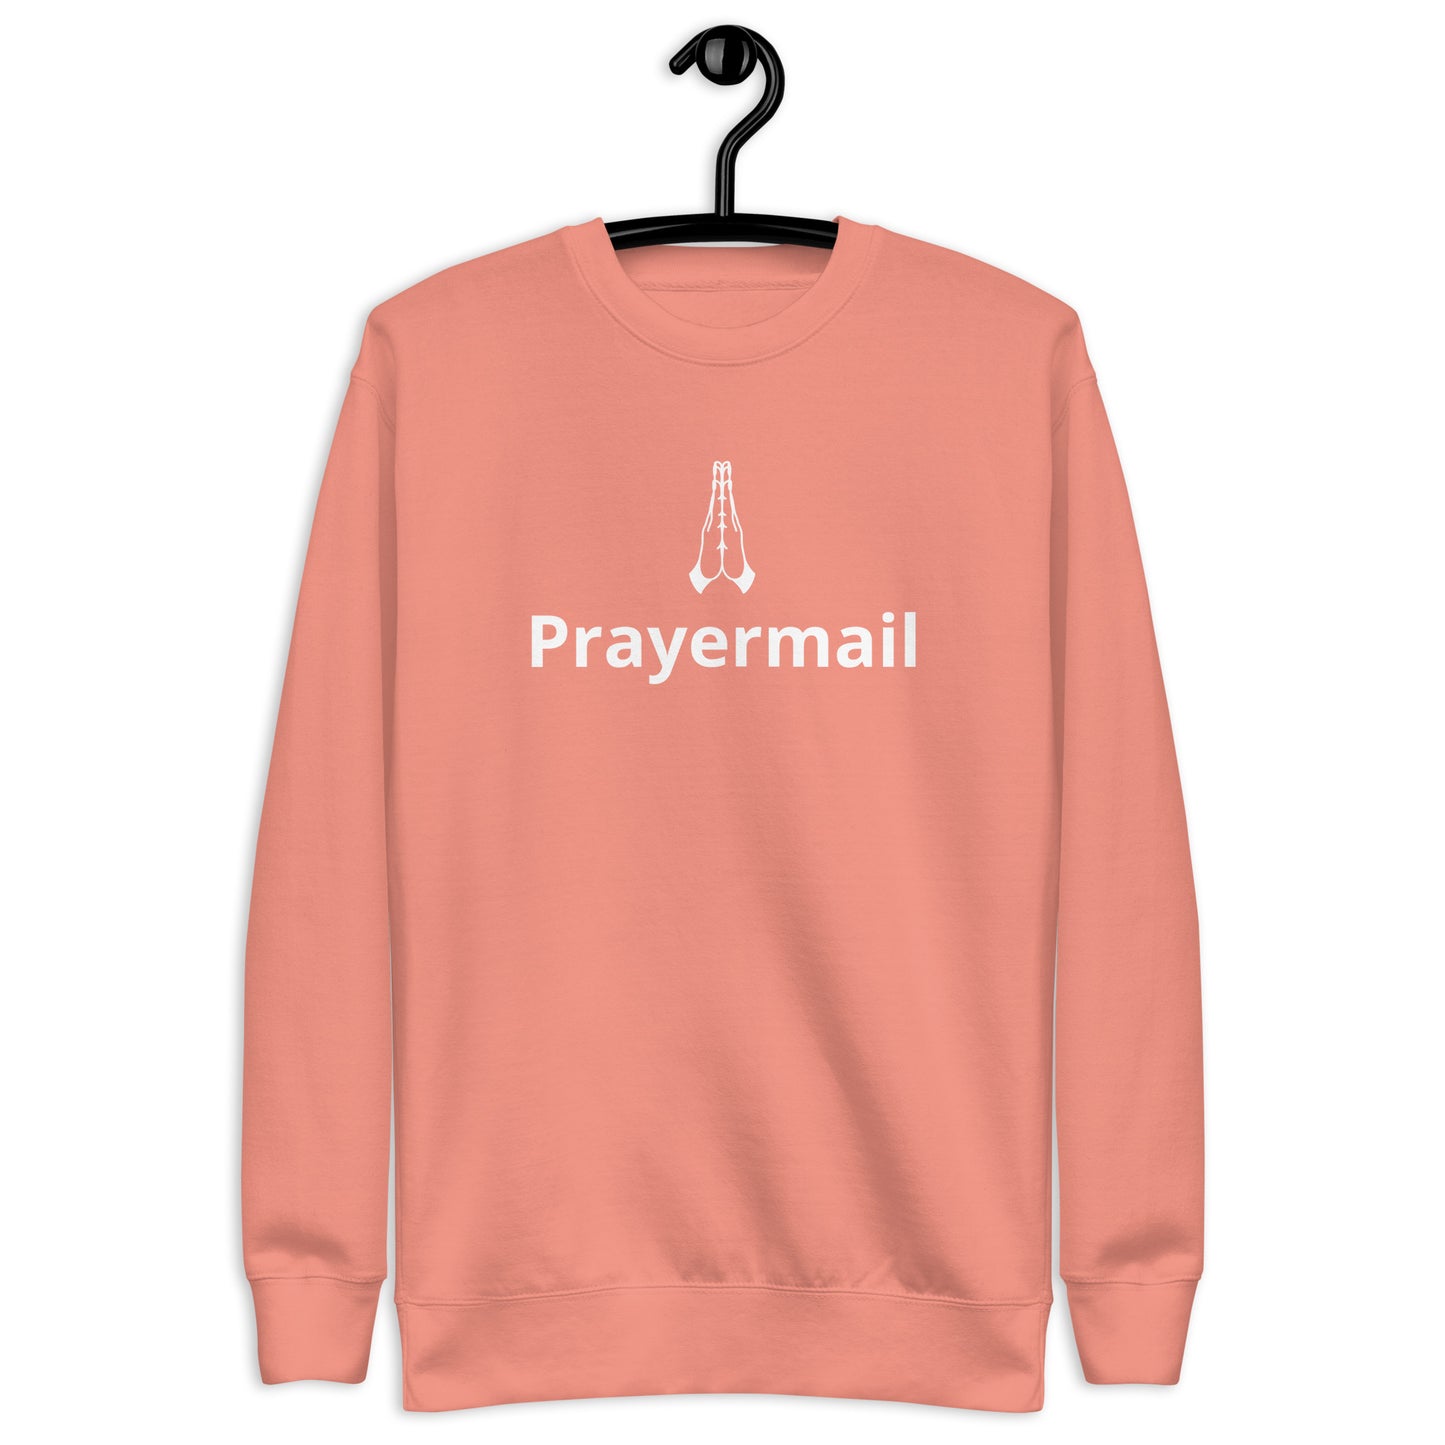 Prayermail Unisex Premium Sweatshirt